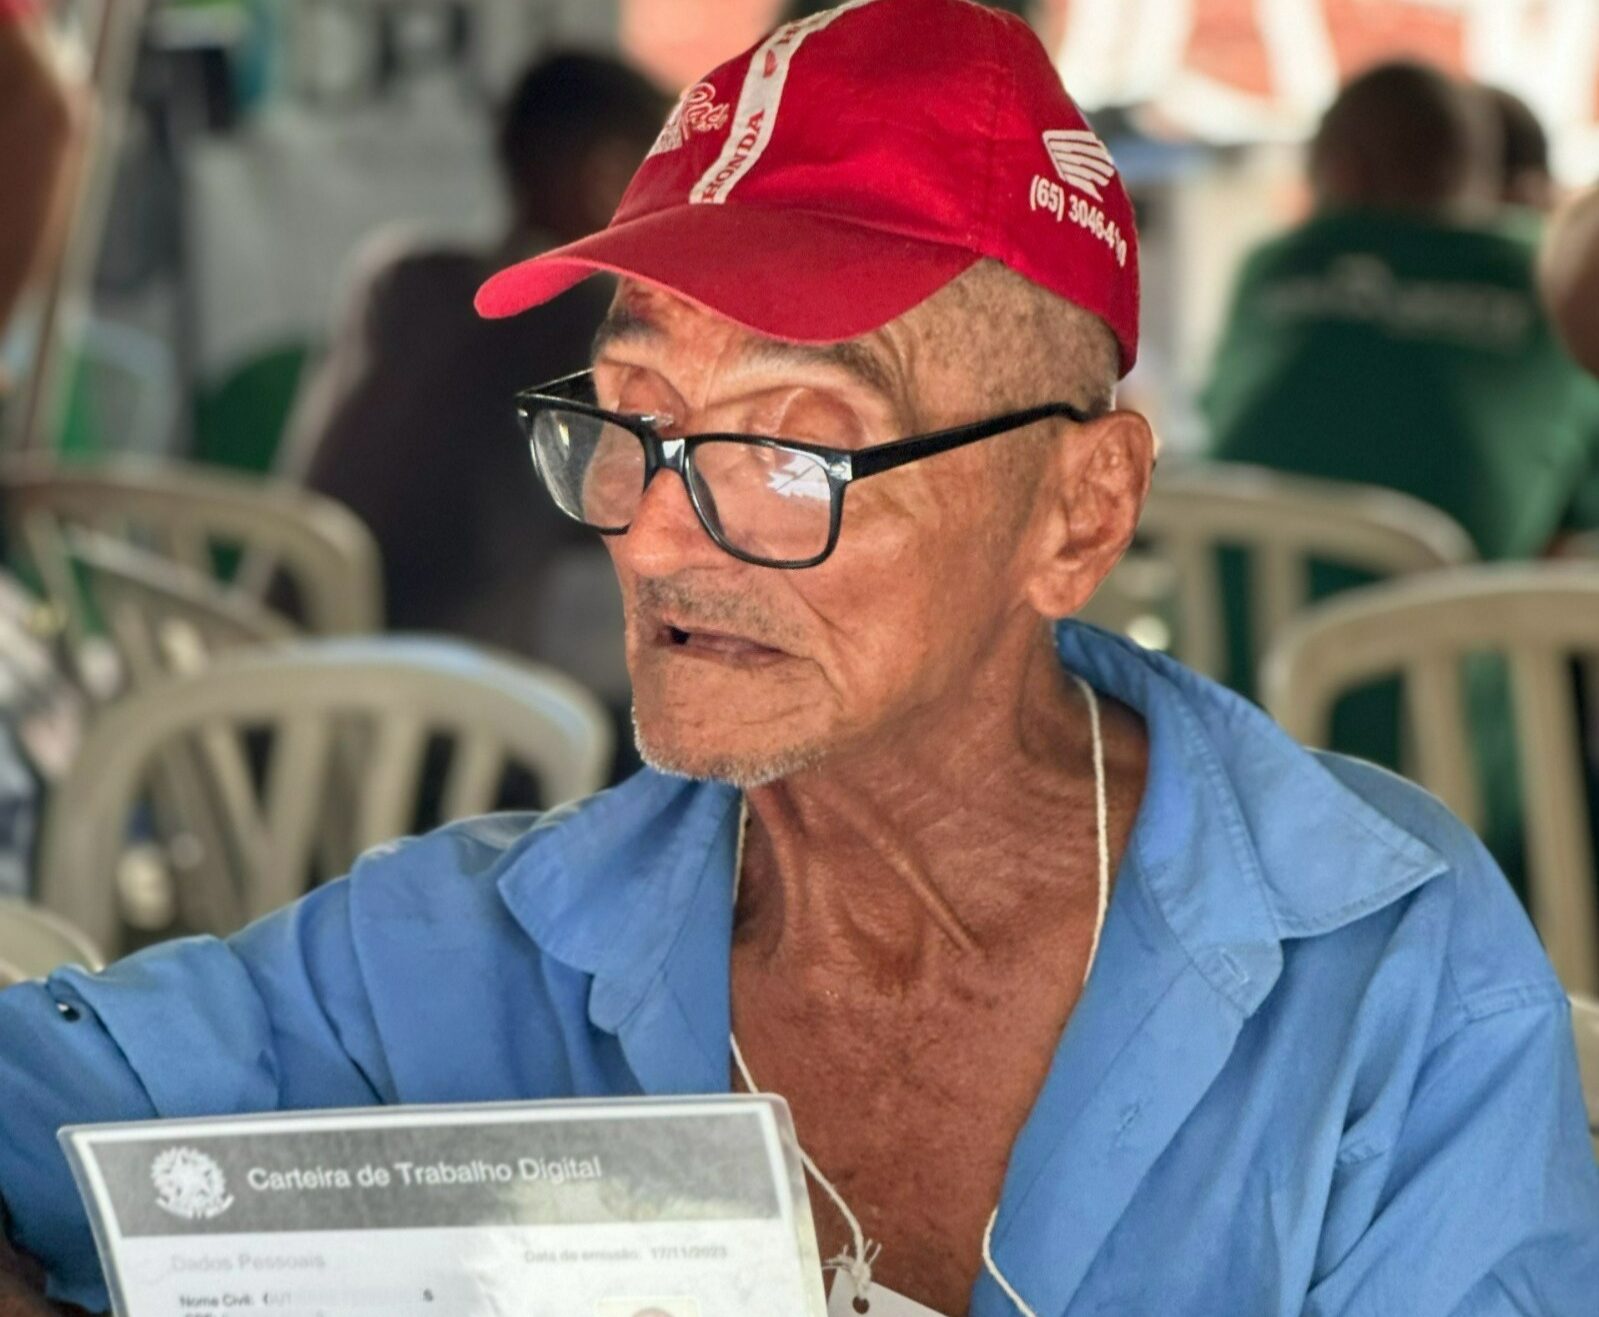 Ex-combatente da 2ª Guerra Mundial consegue identificação civil em mutirão em Mato Grosso